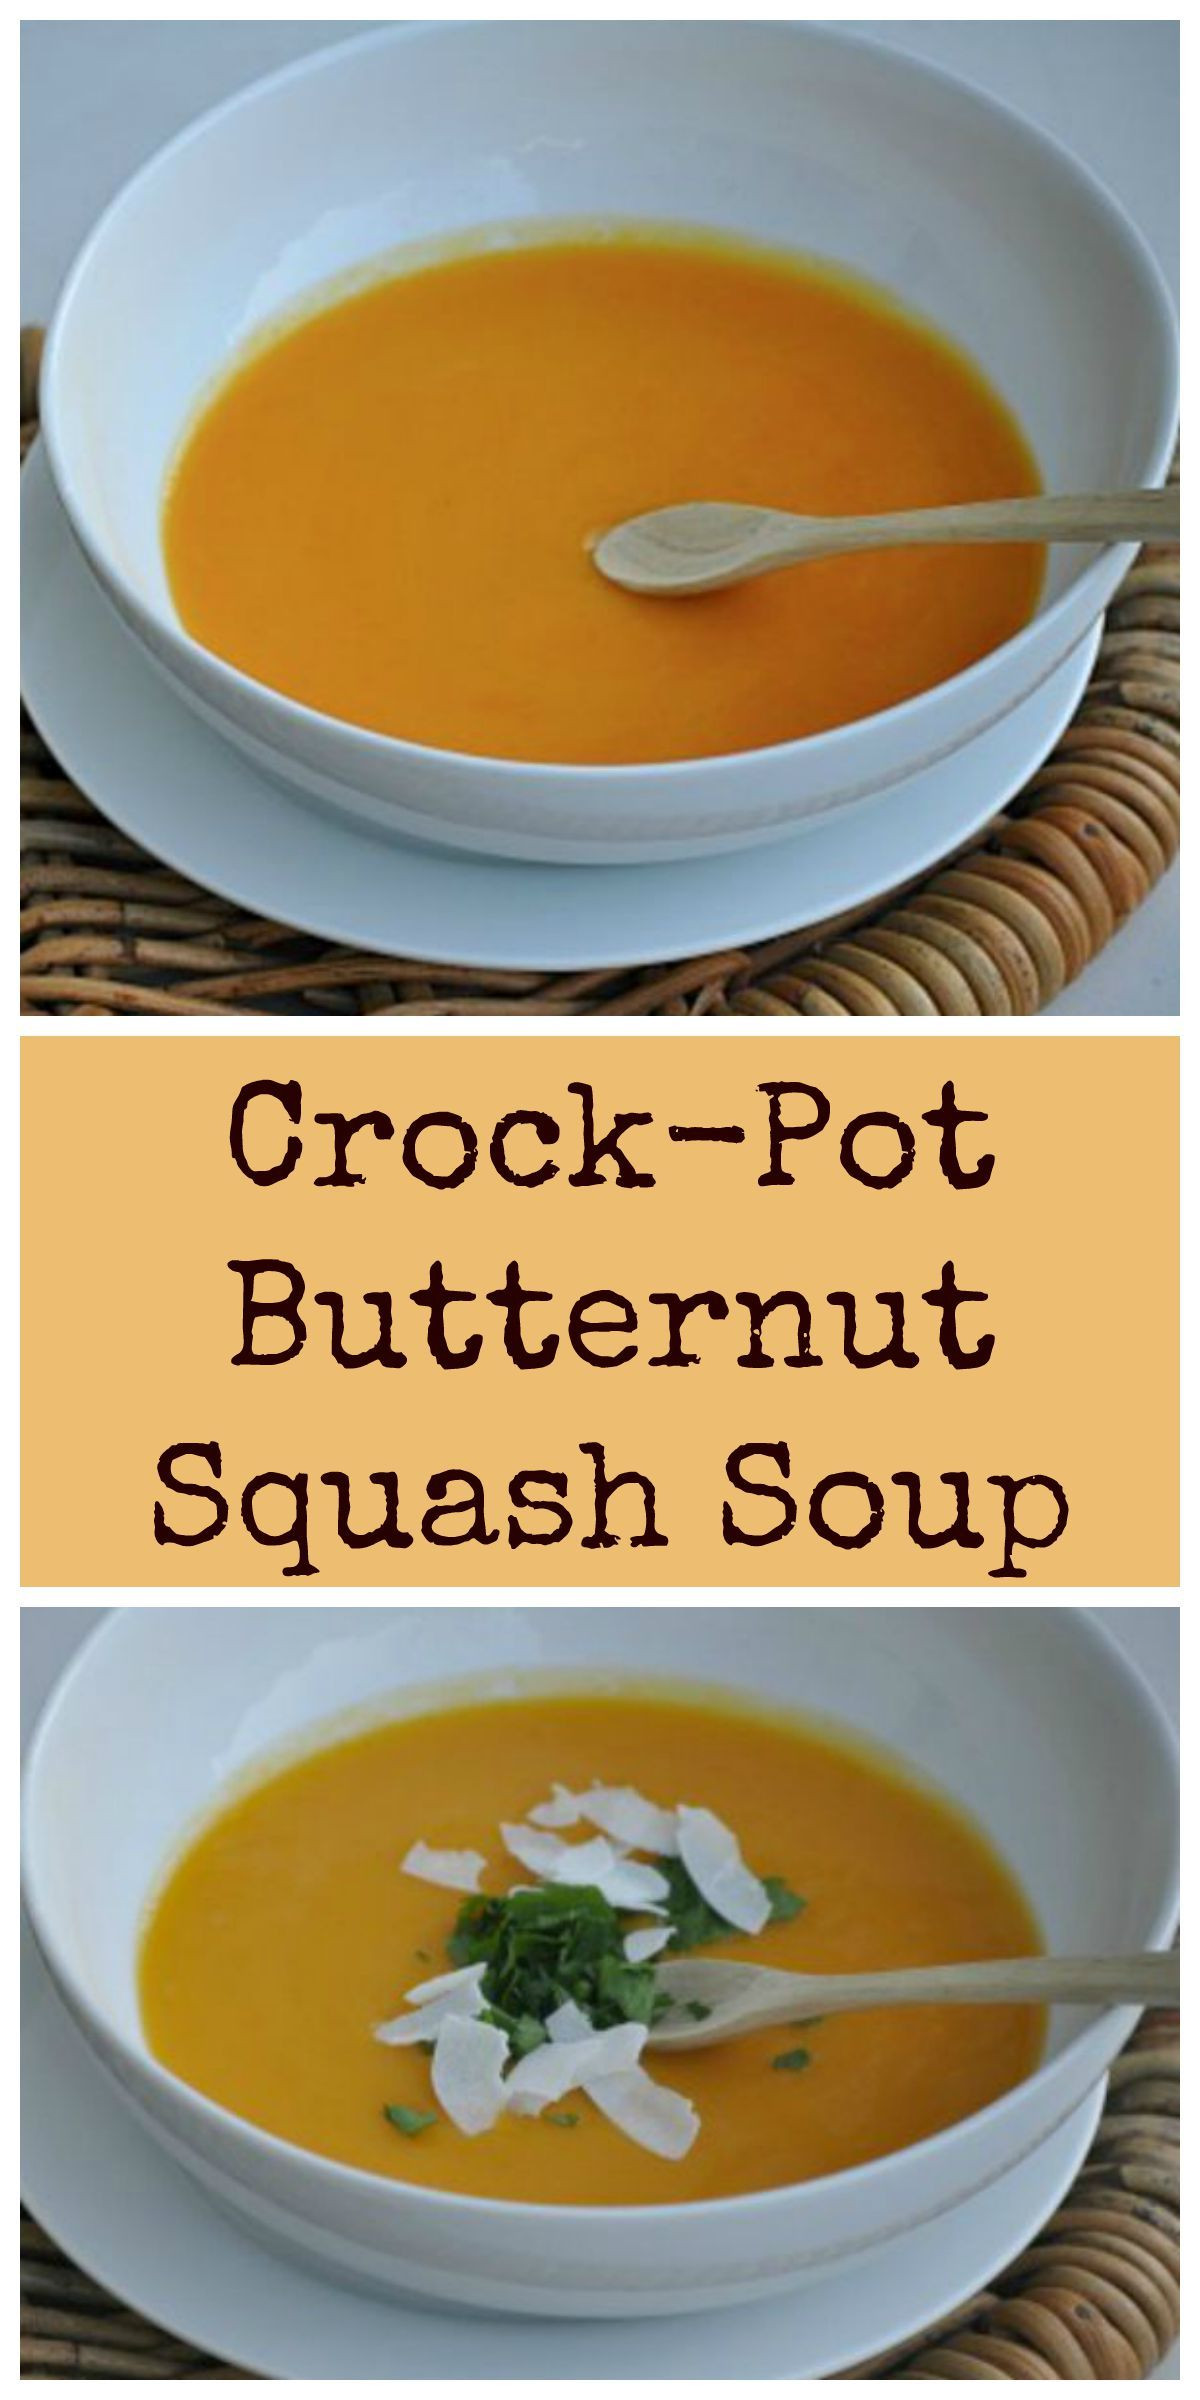 Crockpot Butternut Squash Soup
 Butternut Squash Soup Recipe